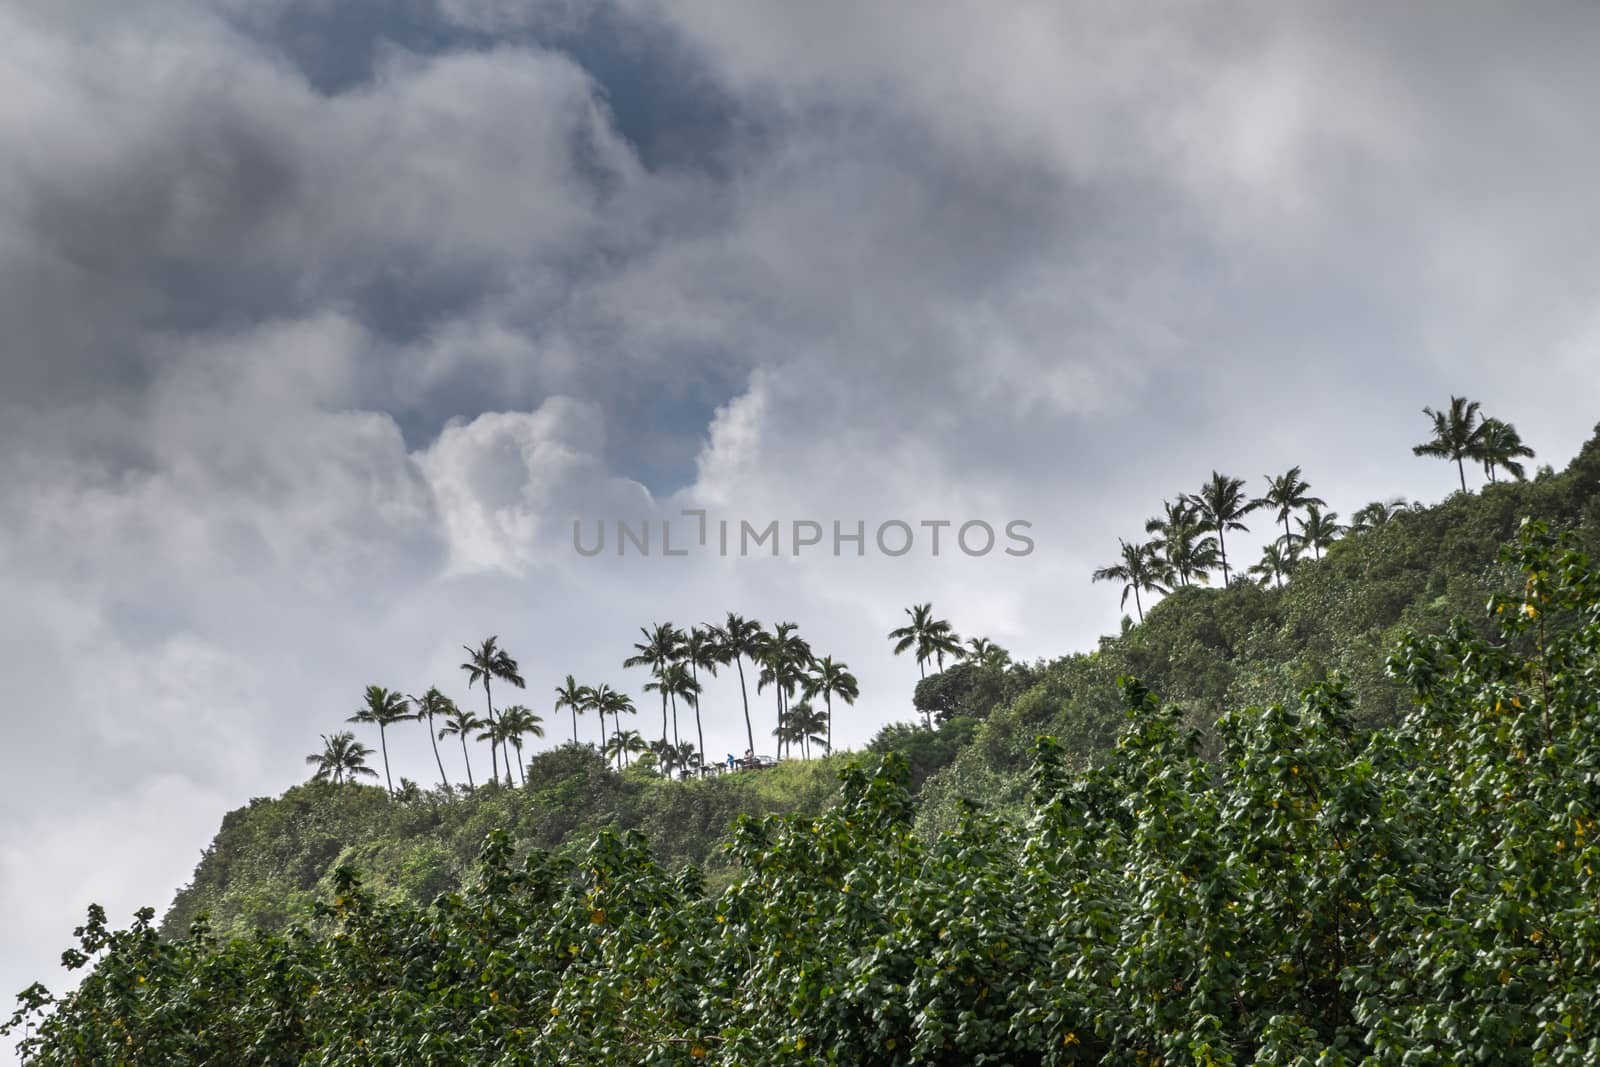 Nawiliwili, Kauai, Hawaii, USA. - January 16, 2020: Palm trees on hill above and along greenish South Fork Wailua River under gray rainy cloudscape.